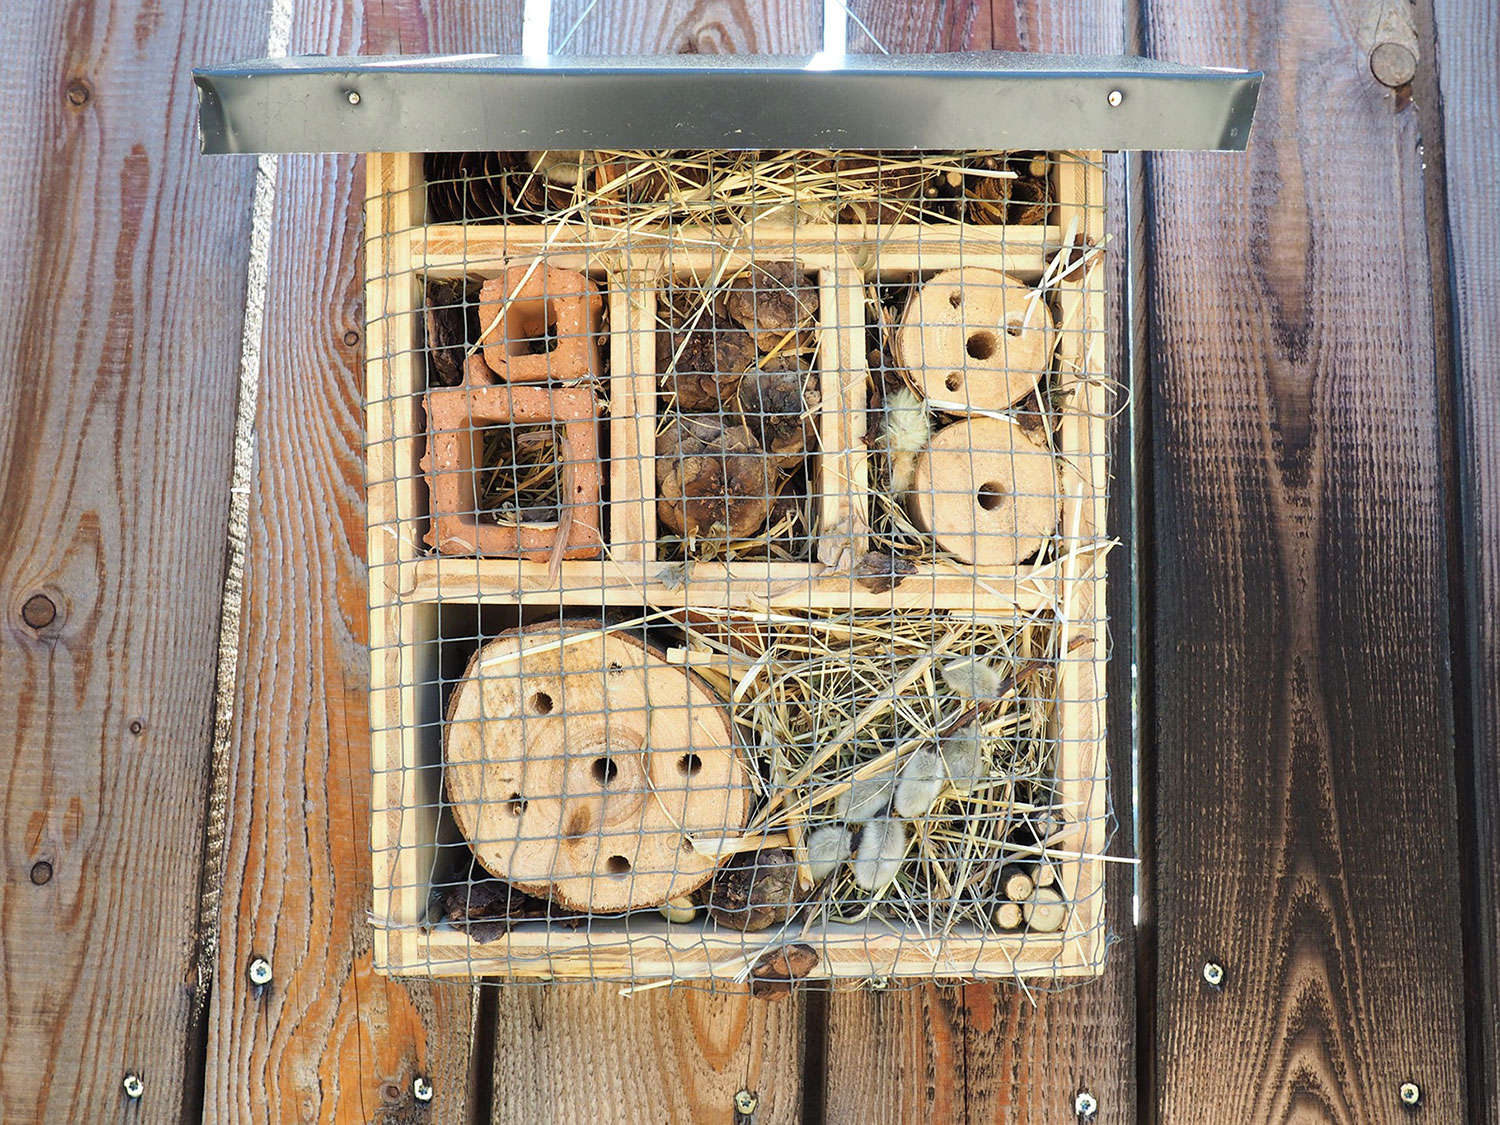 Installer hôtel à insectes - les 4 règles d'or - Hello Birdy le blog